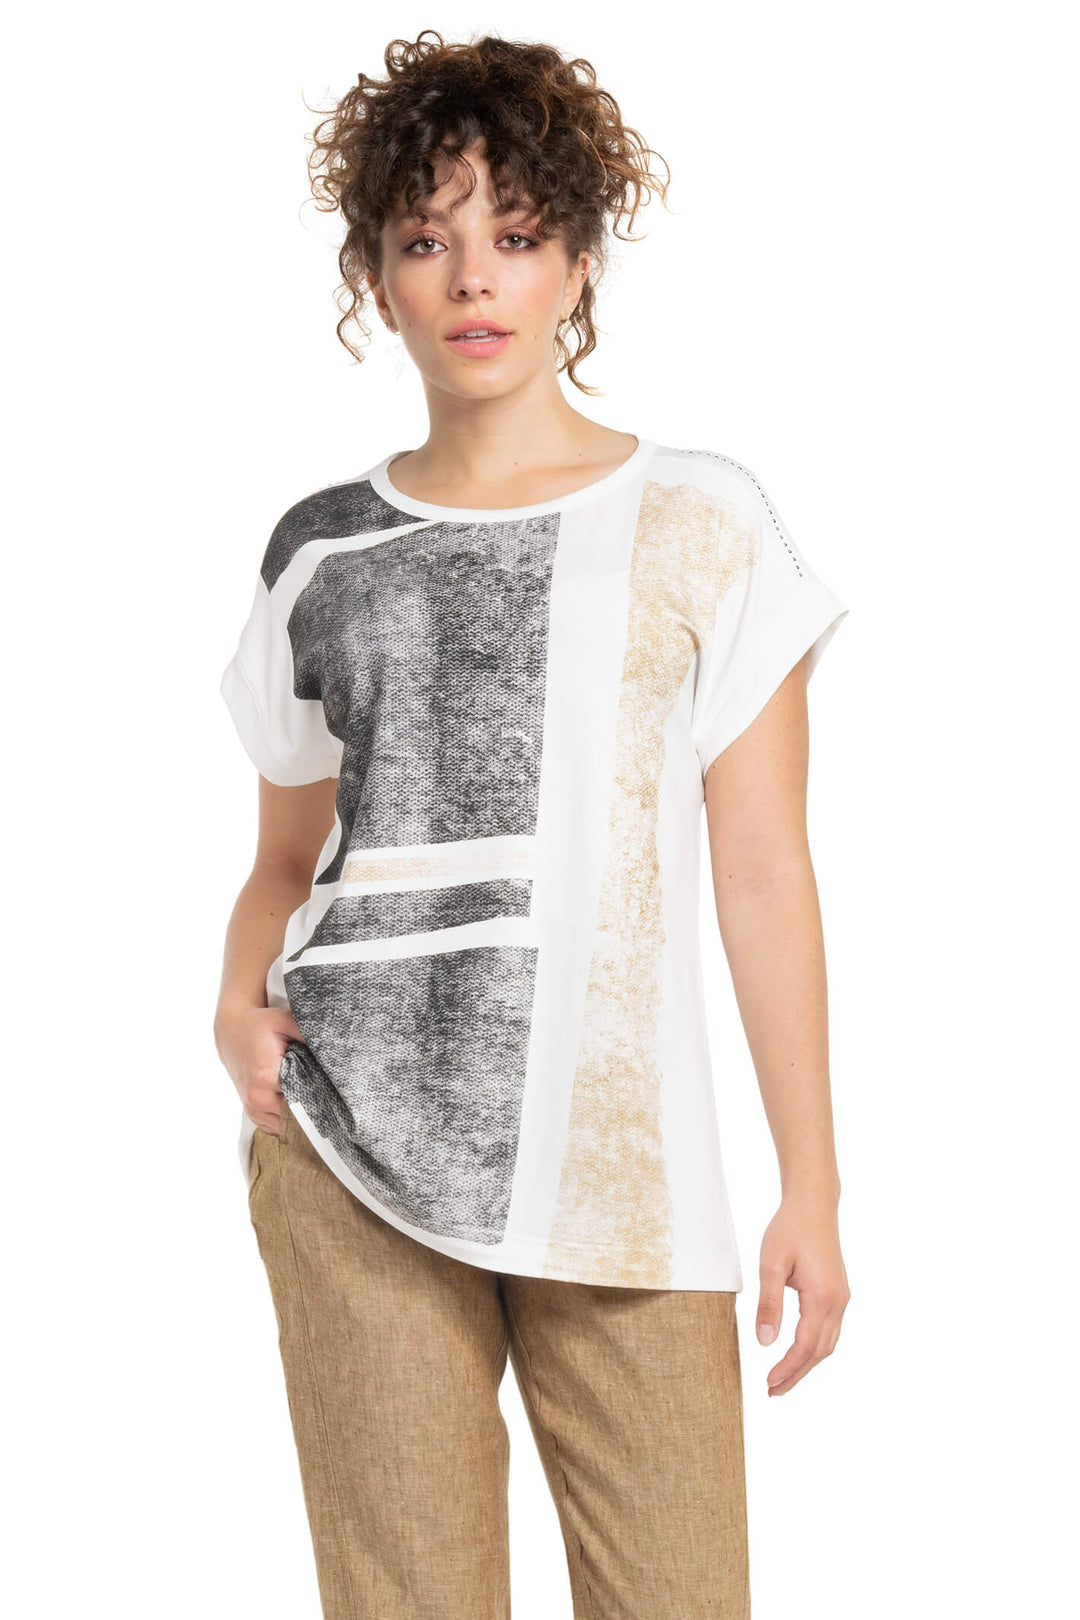 Doris Streich 243 146 88 Print White T-Shirt With Rhinestones - Shirley Allum Boutique